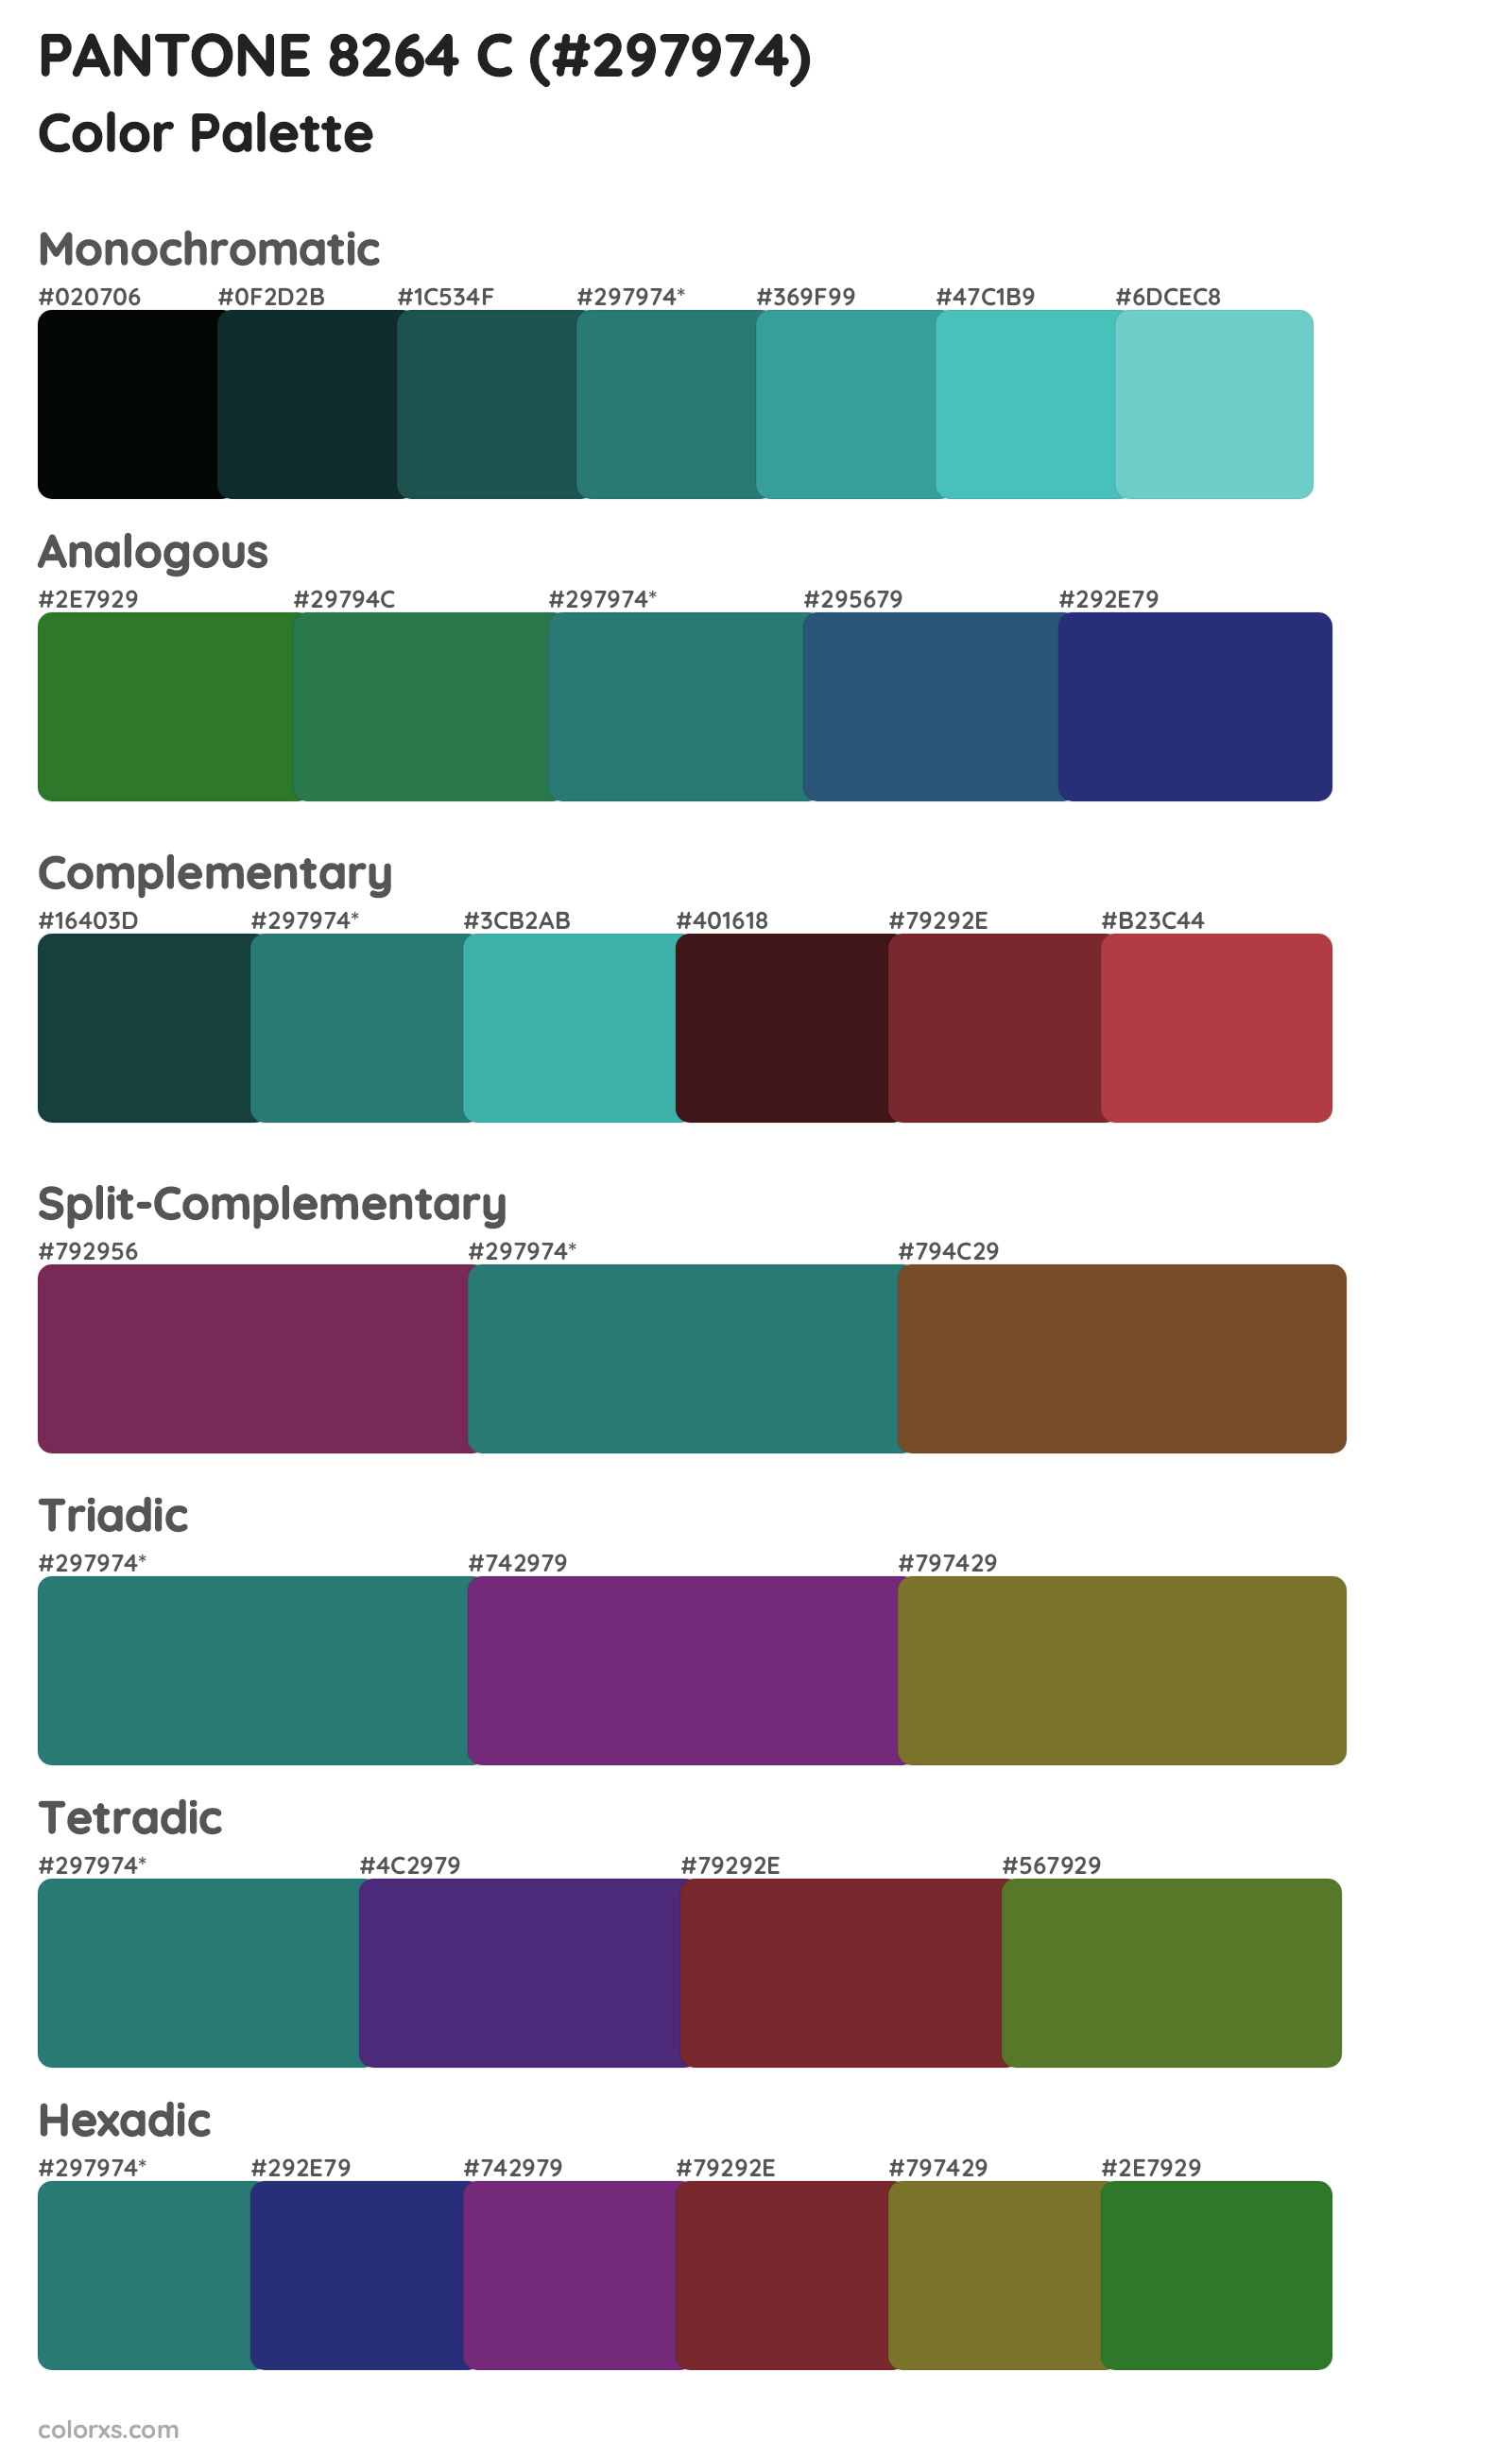 PANTONE 8264 C Color Scheme Palettes